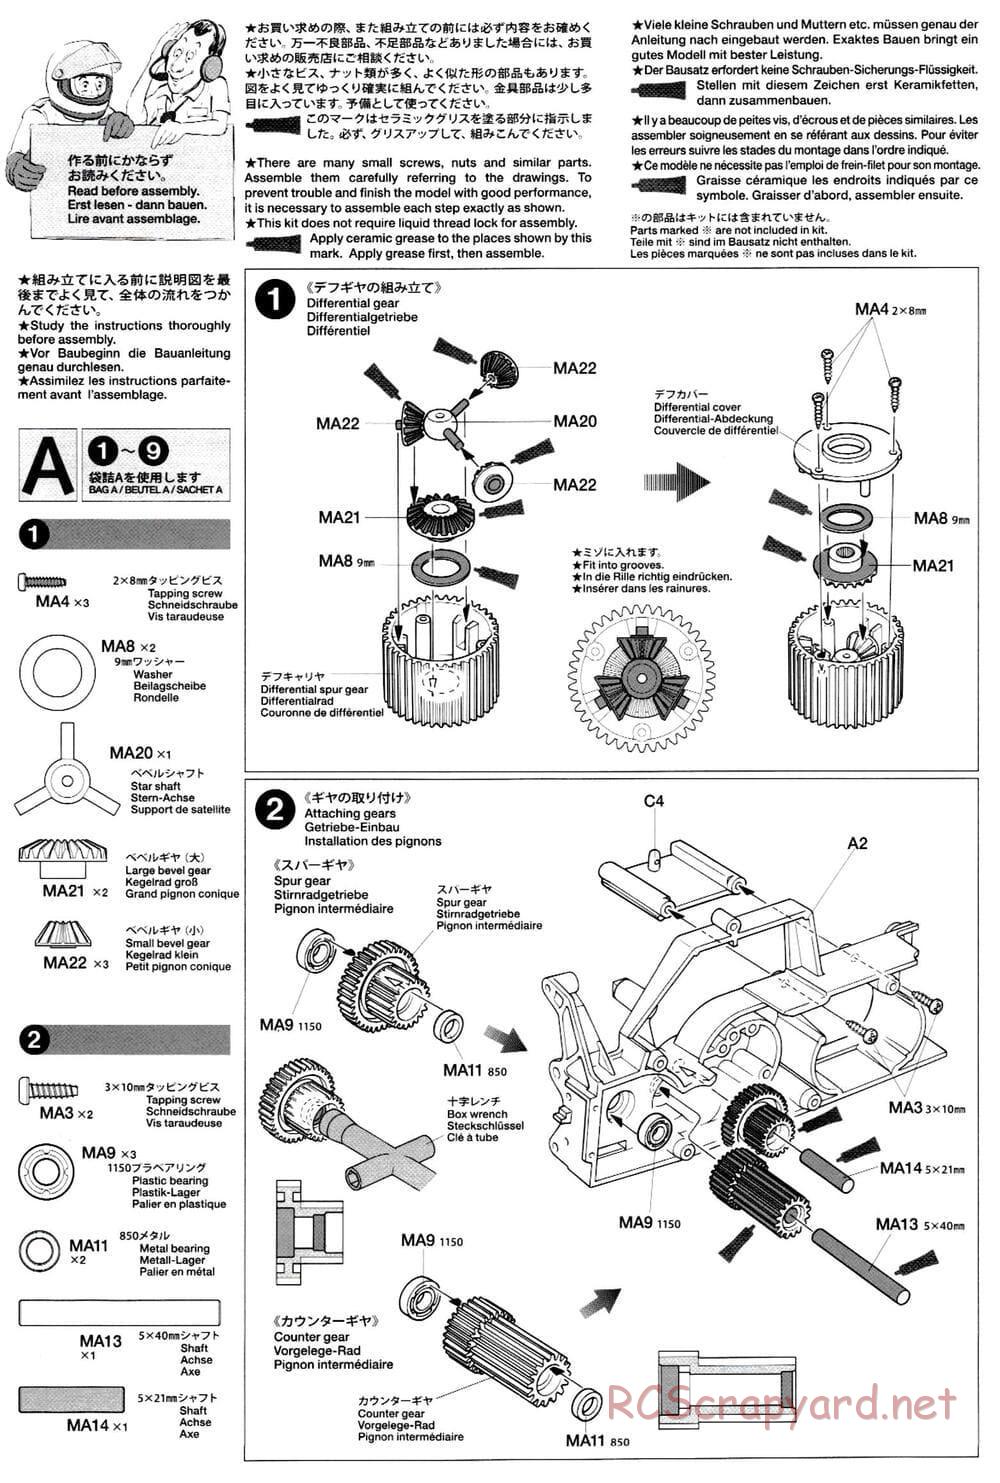 Tamiya - M-03L Chassis - Manual - Page 4